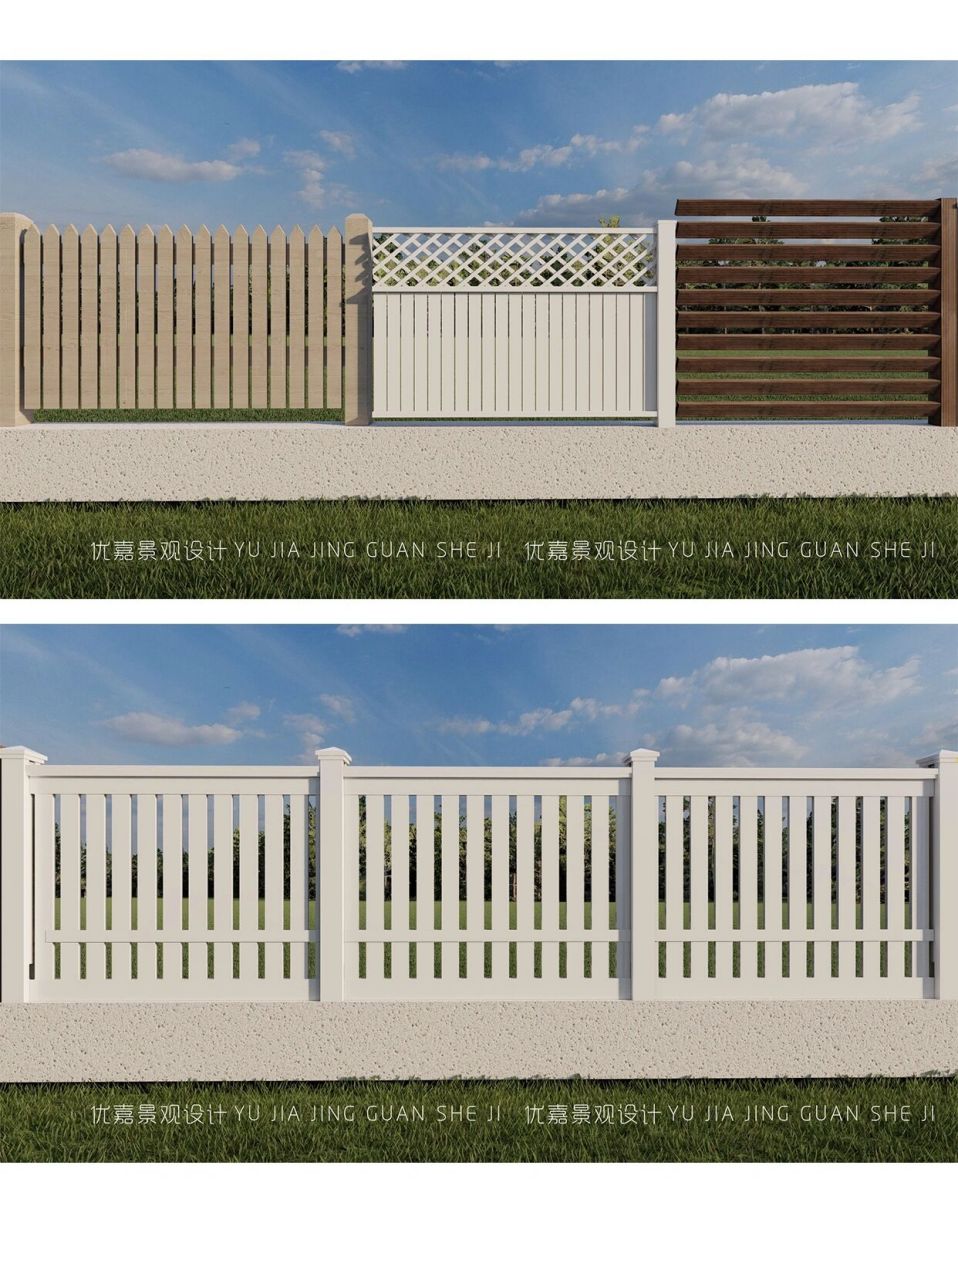 多种庭院93围栏围墙效果图设计赏析(上) 96带给你无限的灵感和